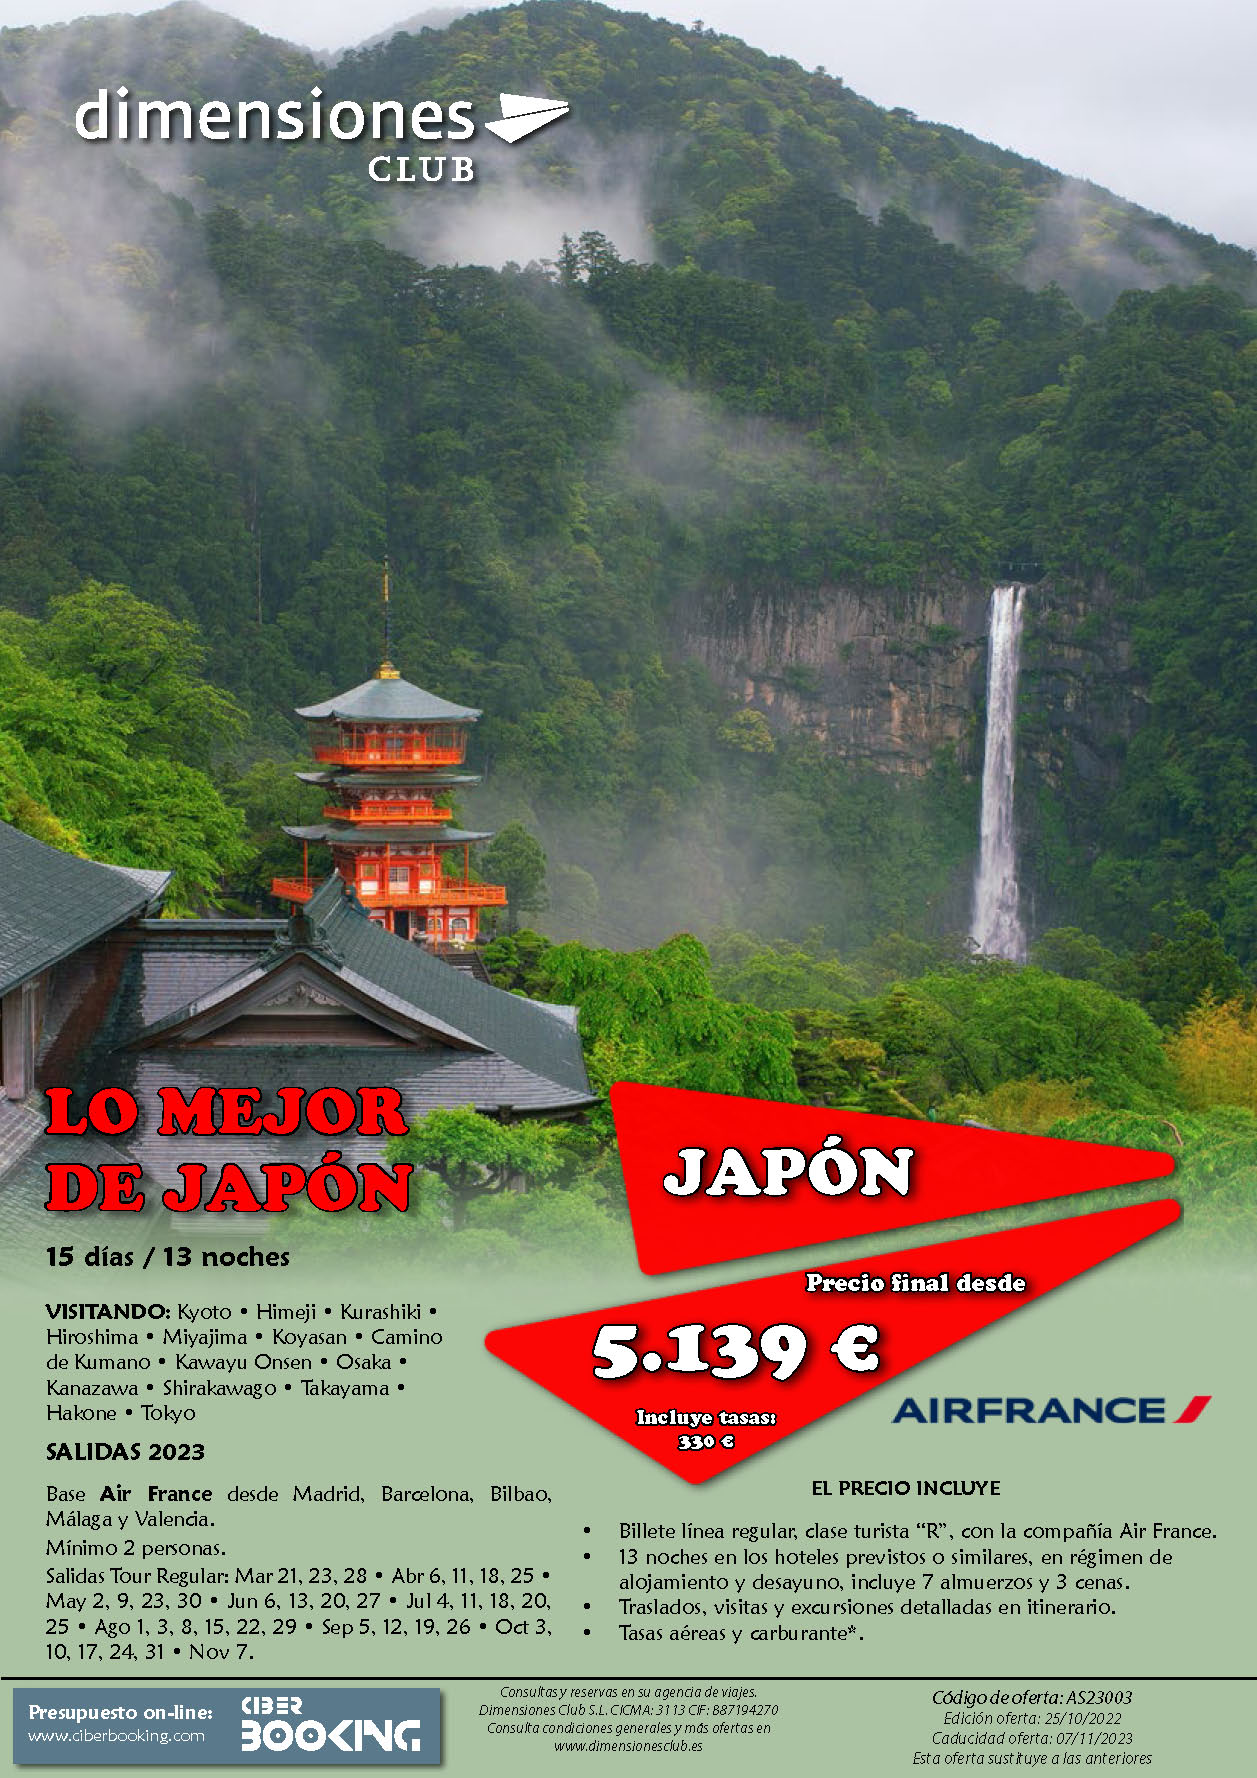 Oferta Dimensiones Club Lo Mejor de Japon 2023 15 dias salidas desde Madrid Barcelona Bilbao Valencia Malaga vuelos Air France